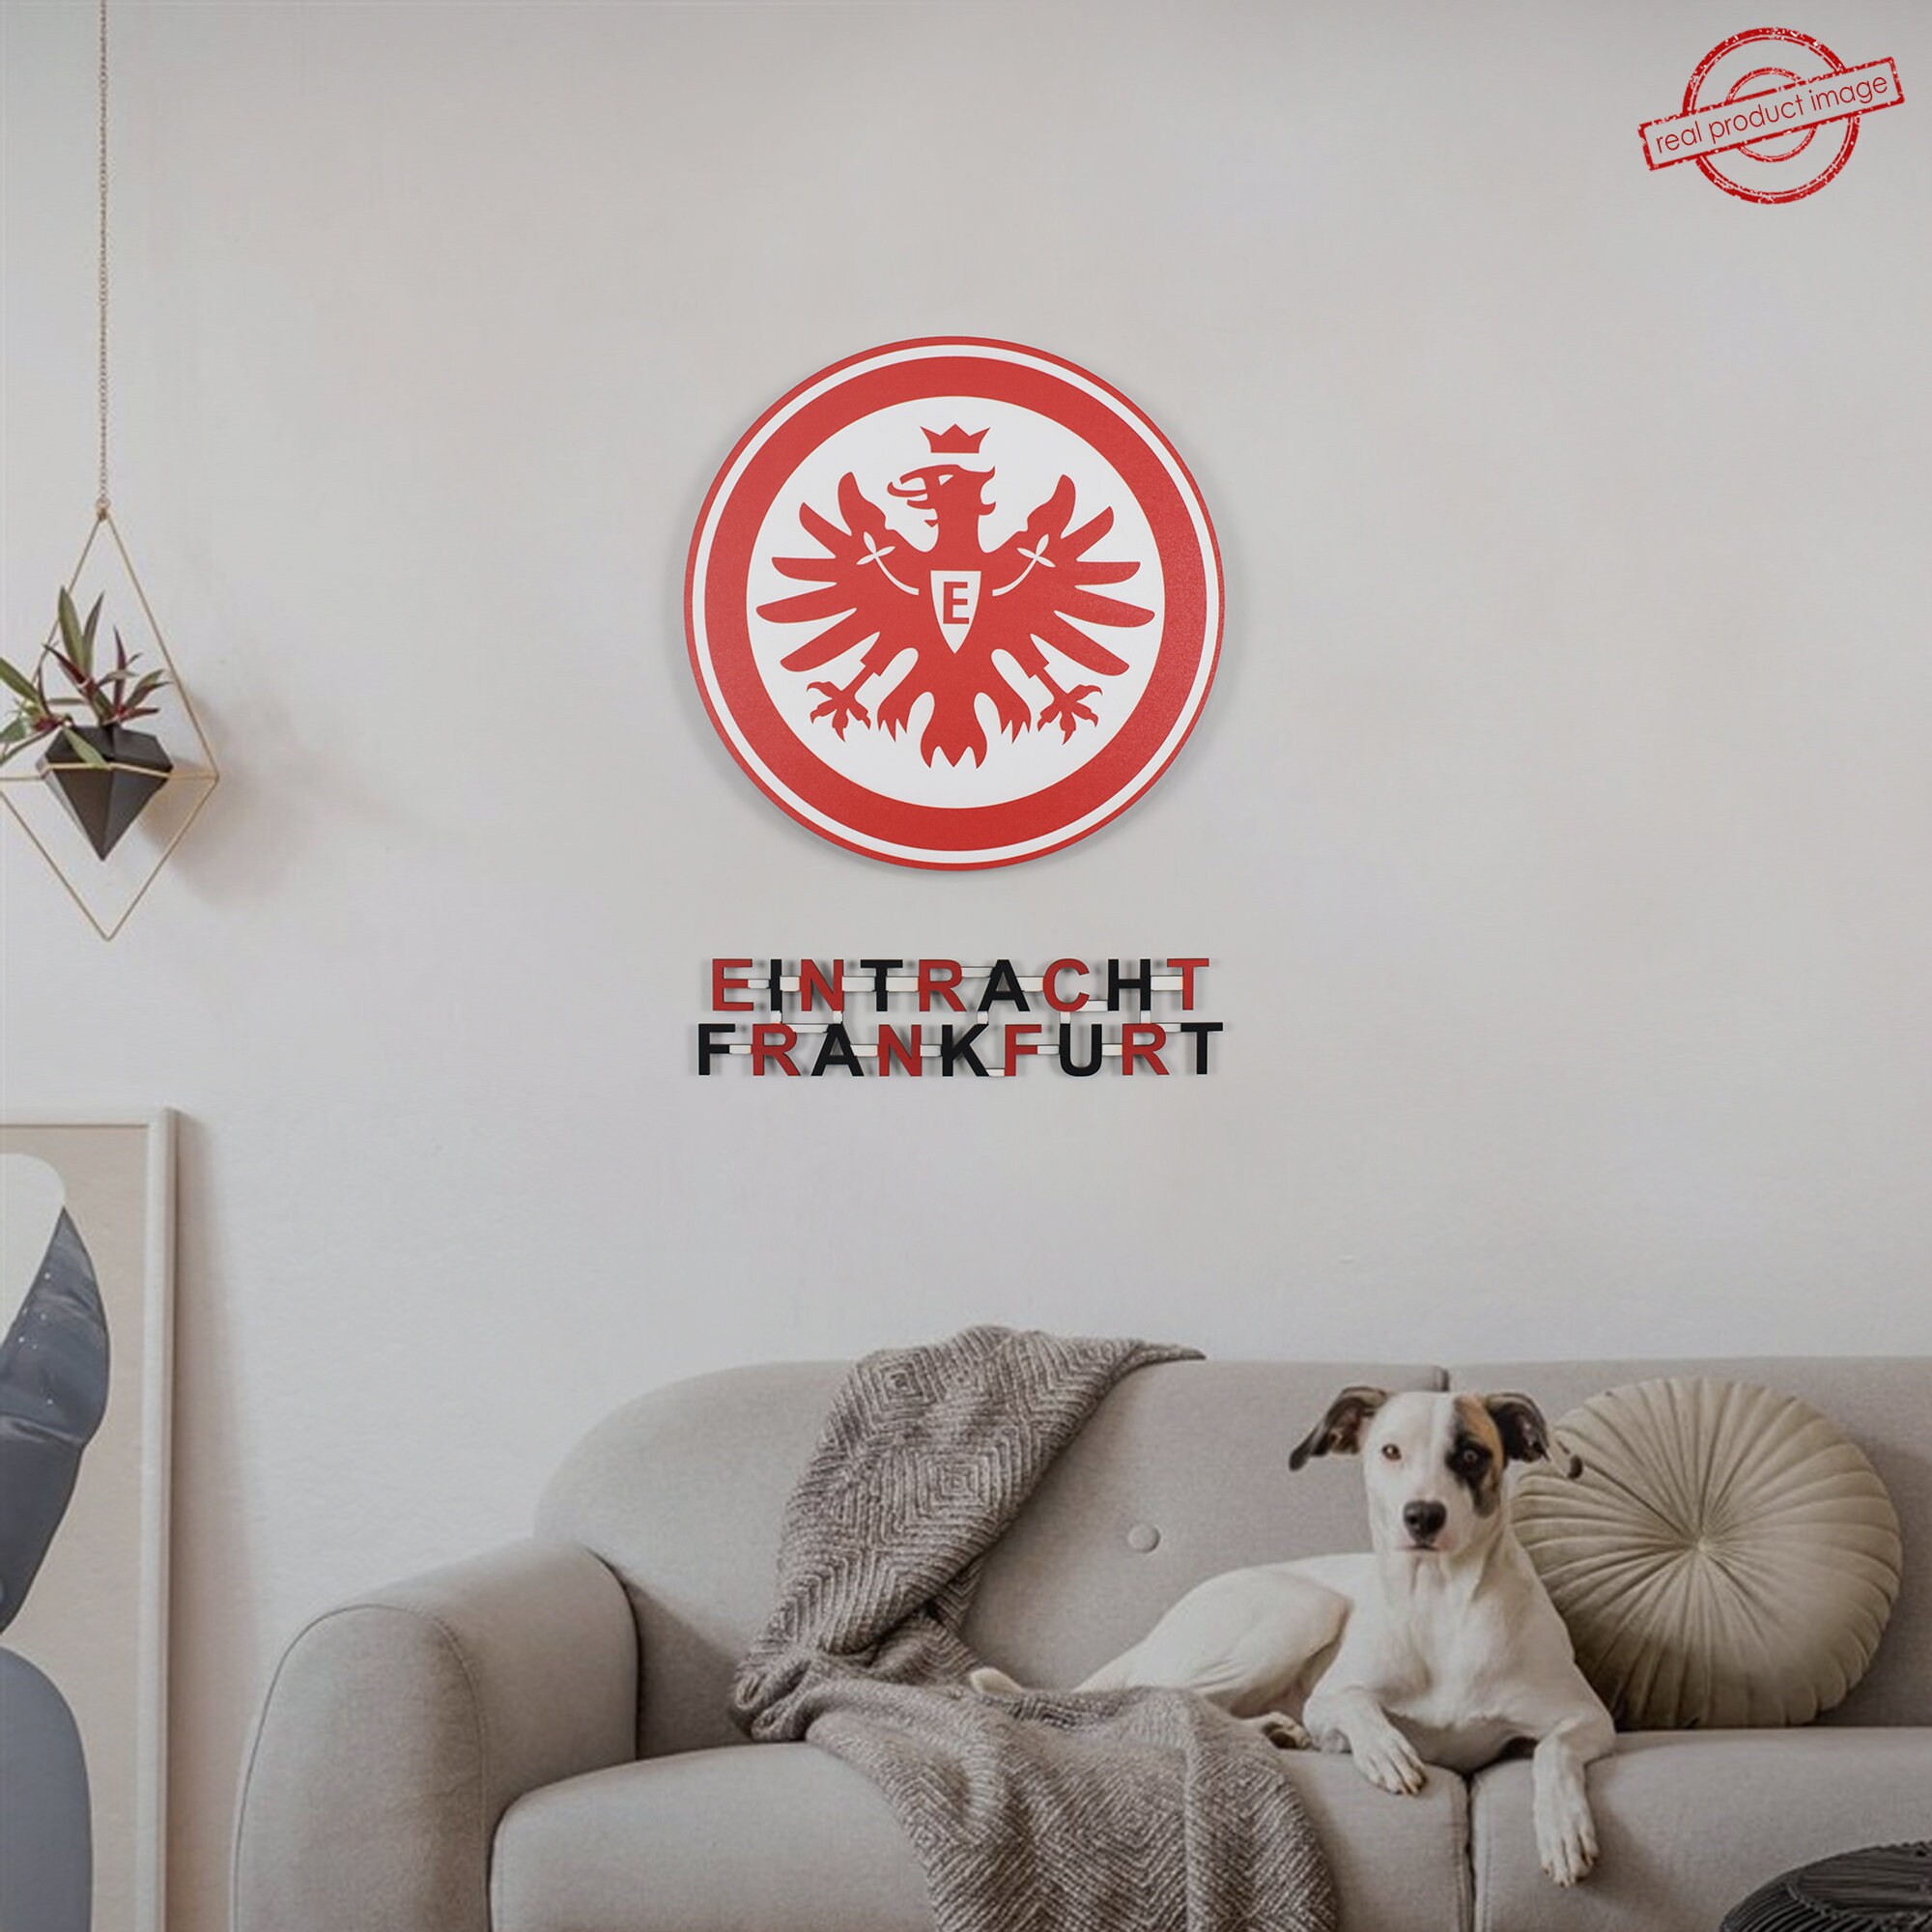 Eintracht Frankfurt Team Logo. Wall Art Eintracht Frankfurt. for Wall  Frankfurt. Eintracht Frankfurt Decor.wooden Frankfurt Logo Sticker. - Etsy  Hong Kong | Wandtattoos